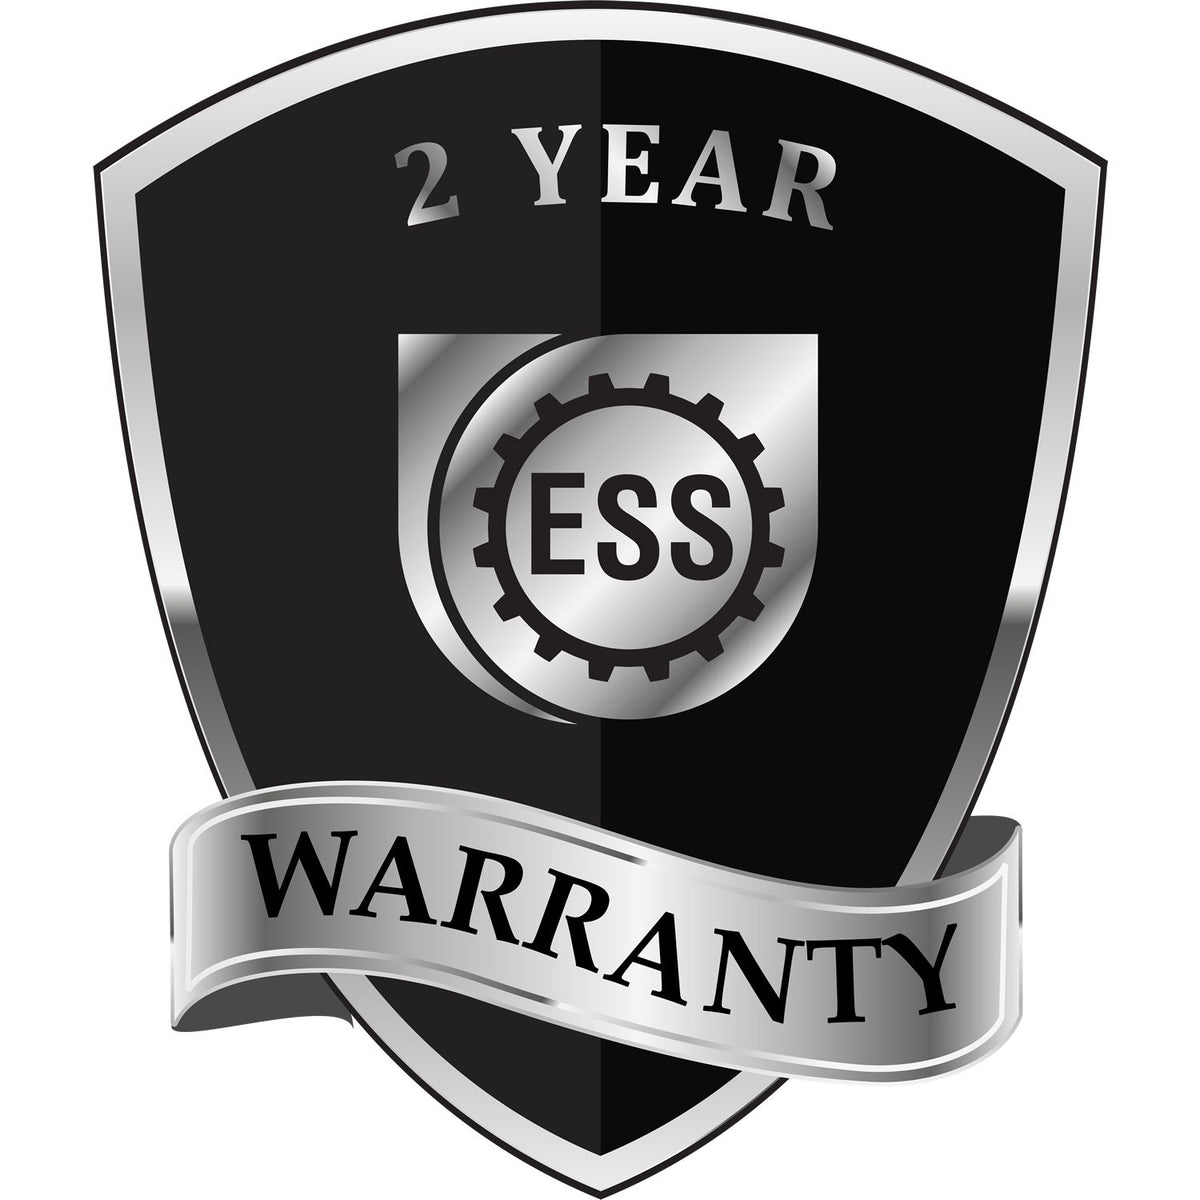 A black and silver badge or emblem showing warranty information for the Hybrid Nebraska Landscape Architect Seal